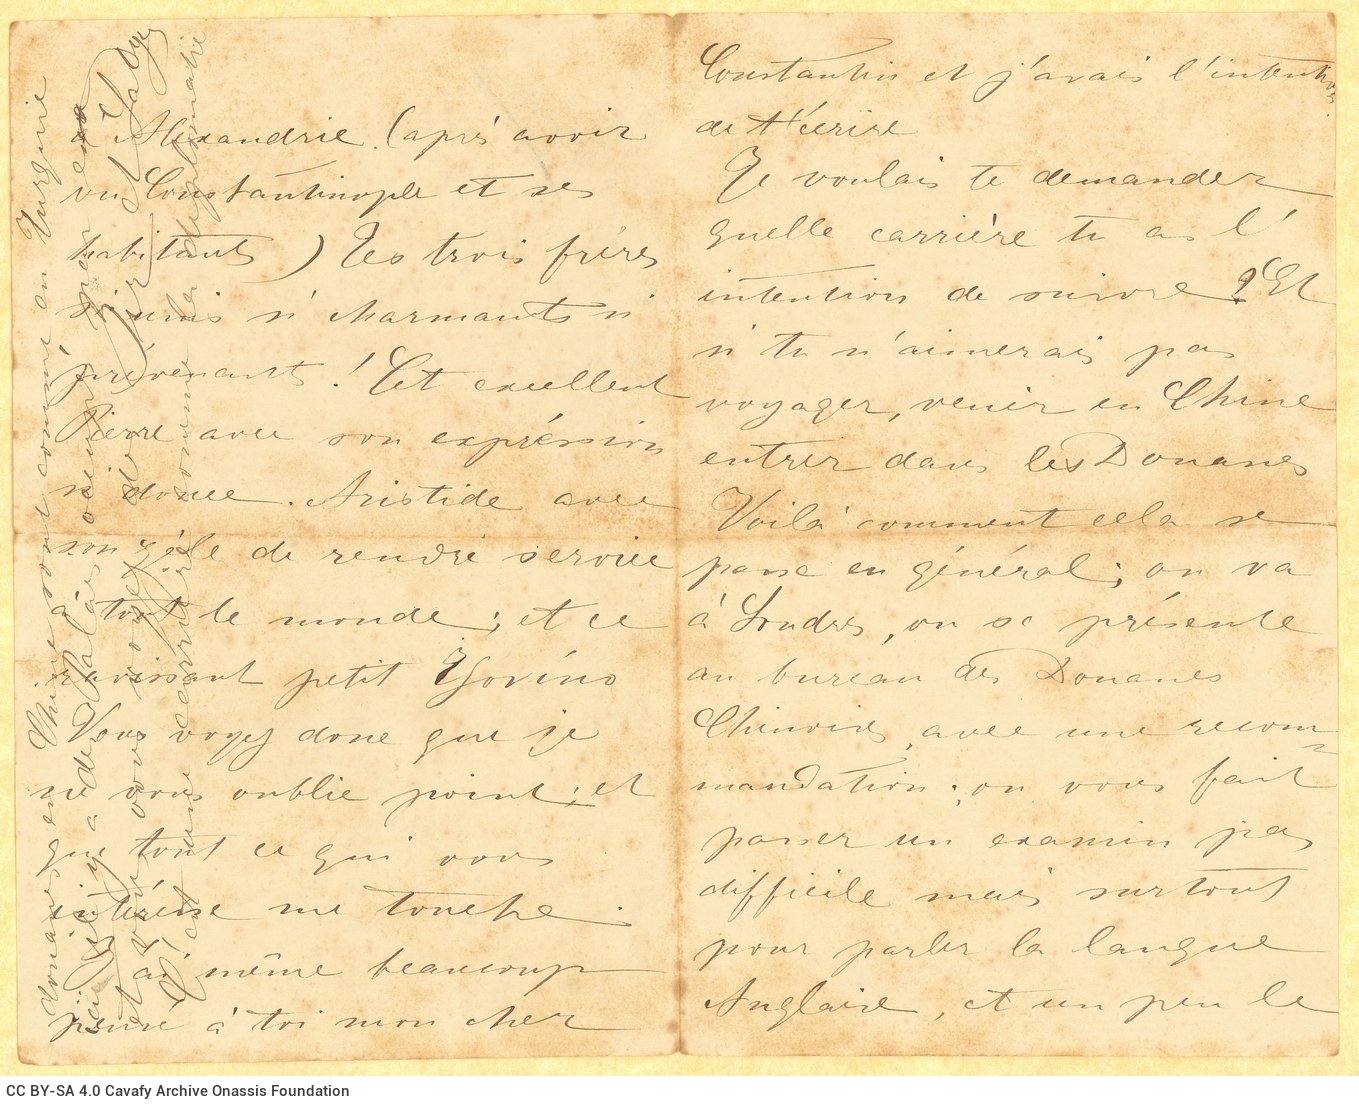 Χειρόγραφη επιστολή της Σεβαστής Verhaeghe de Naeyer, θείας του Καβάφη, προς �